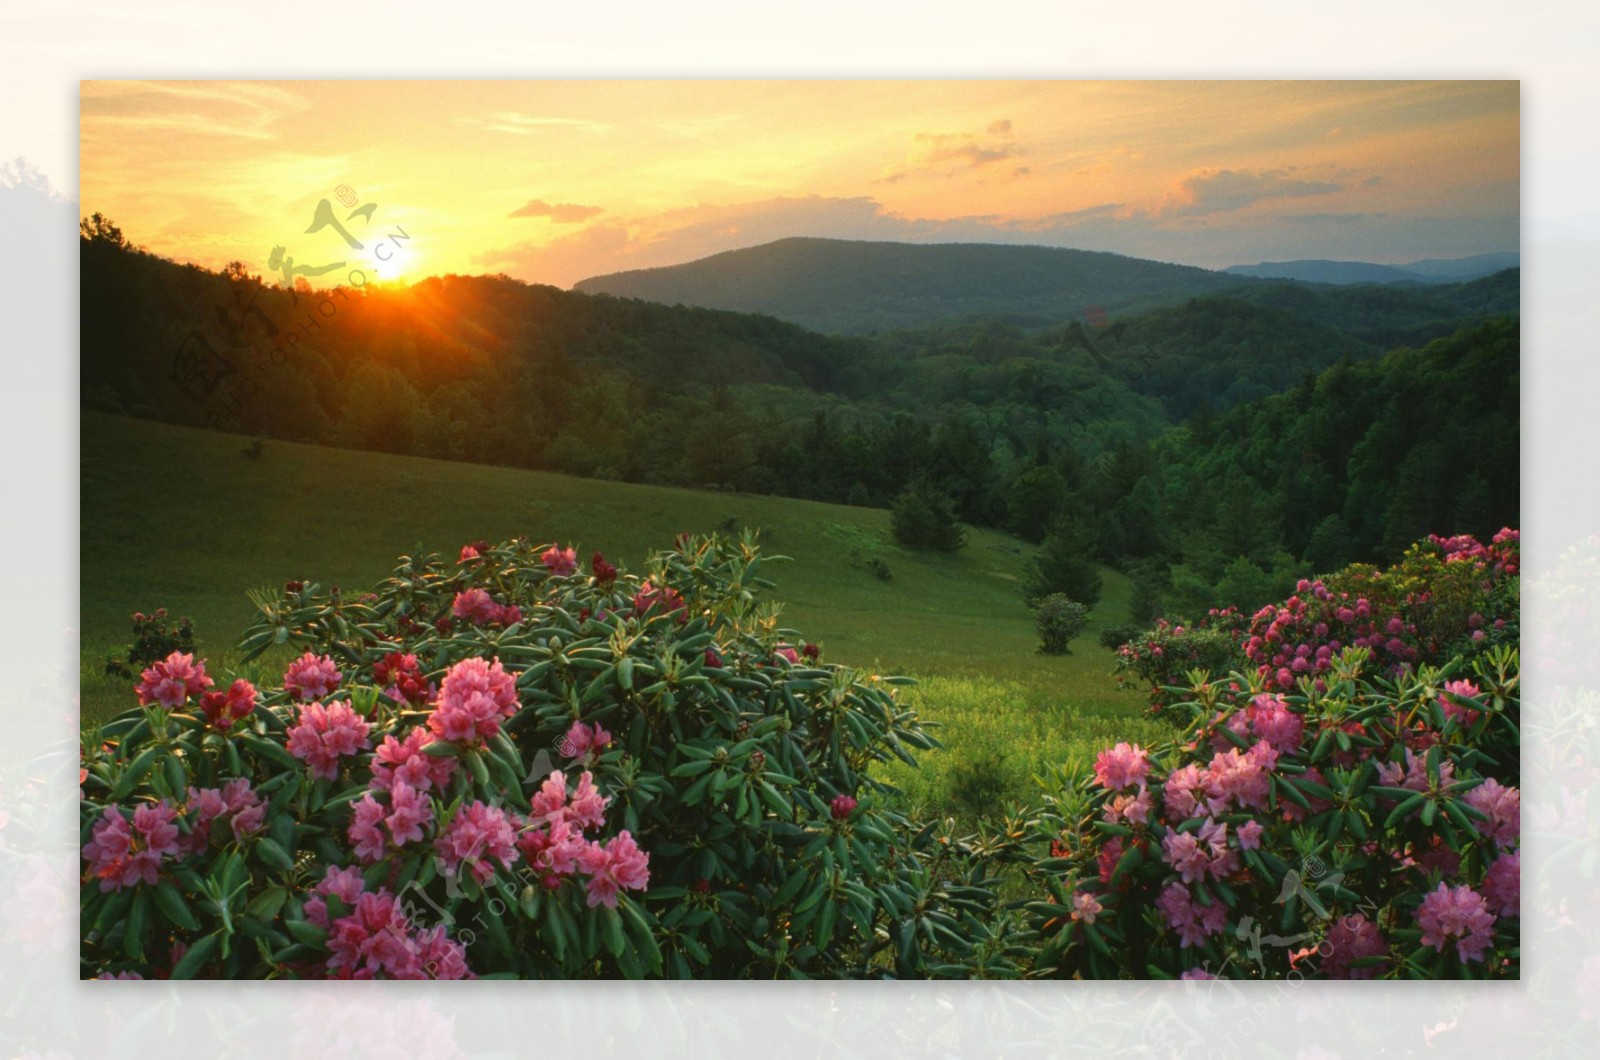 夕阳下的花朵高山风景图片